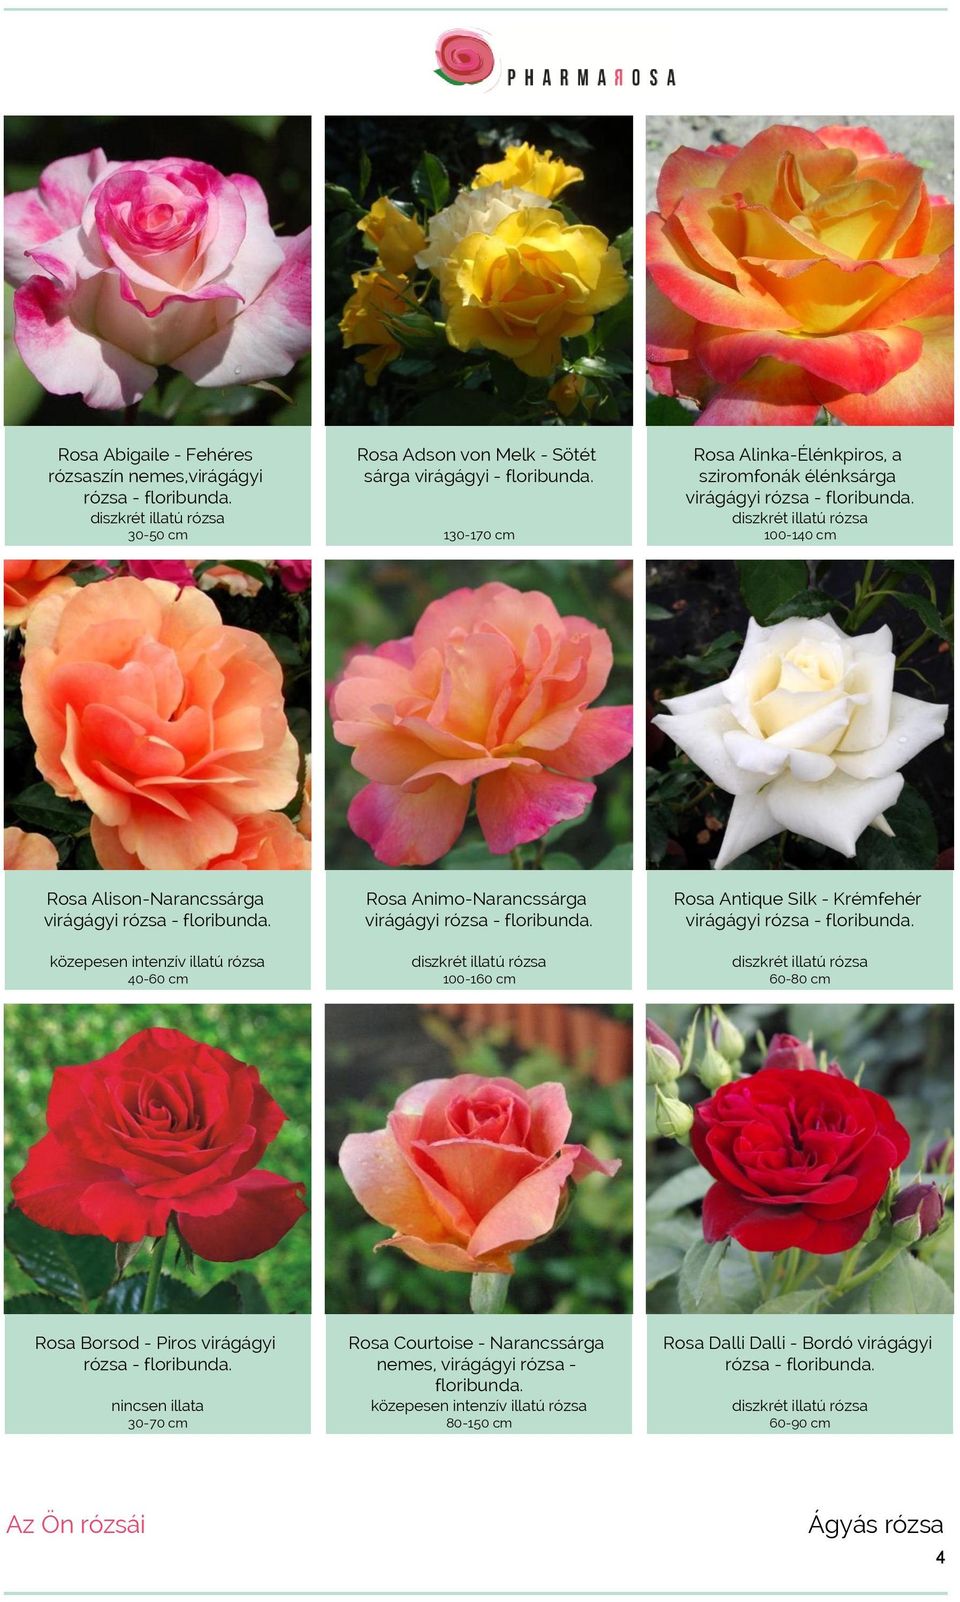 közepesen 40-60 cm Rosa Animo-Narancssárga virágágyi rózsa - floribunda. 100-160 cm Rosa Antique Silk - Krémfehér virágágyi rózsa - floribunda.